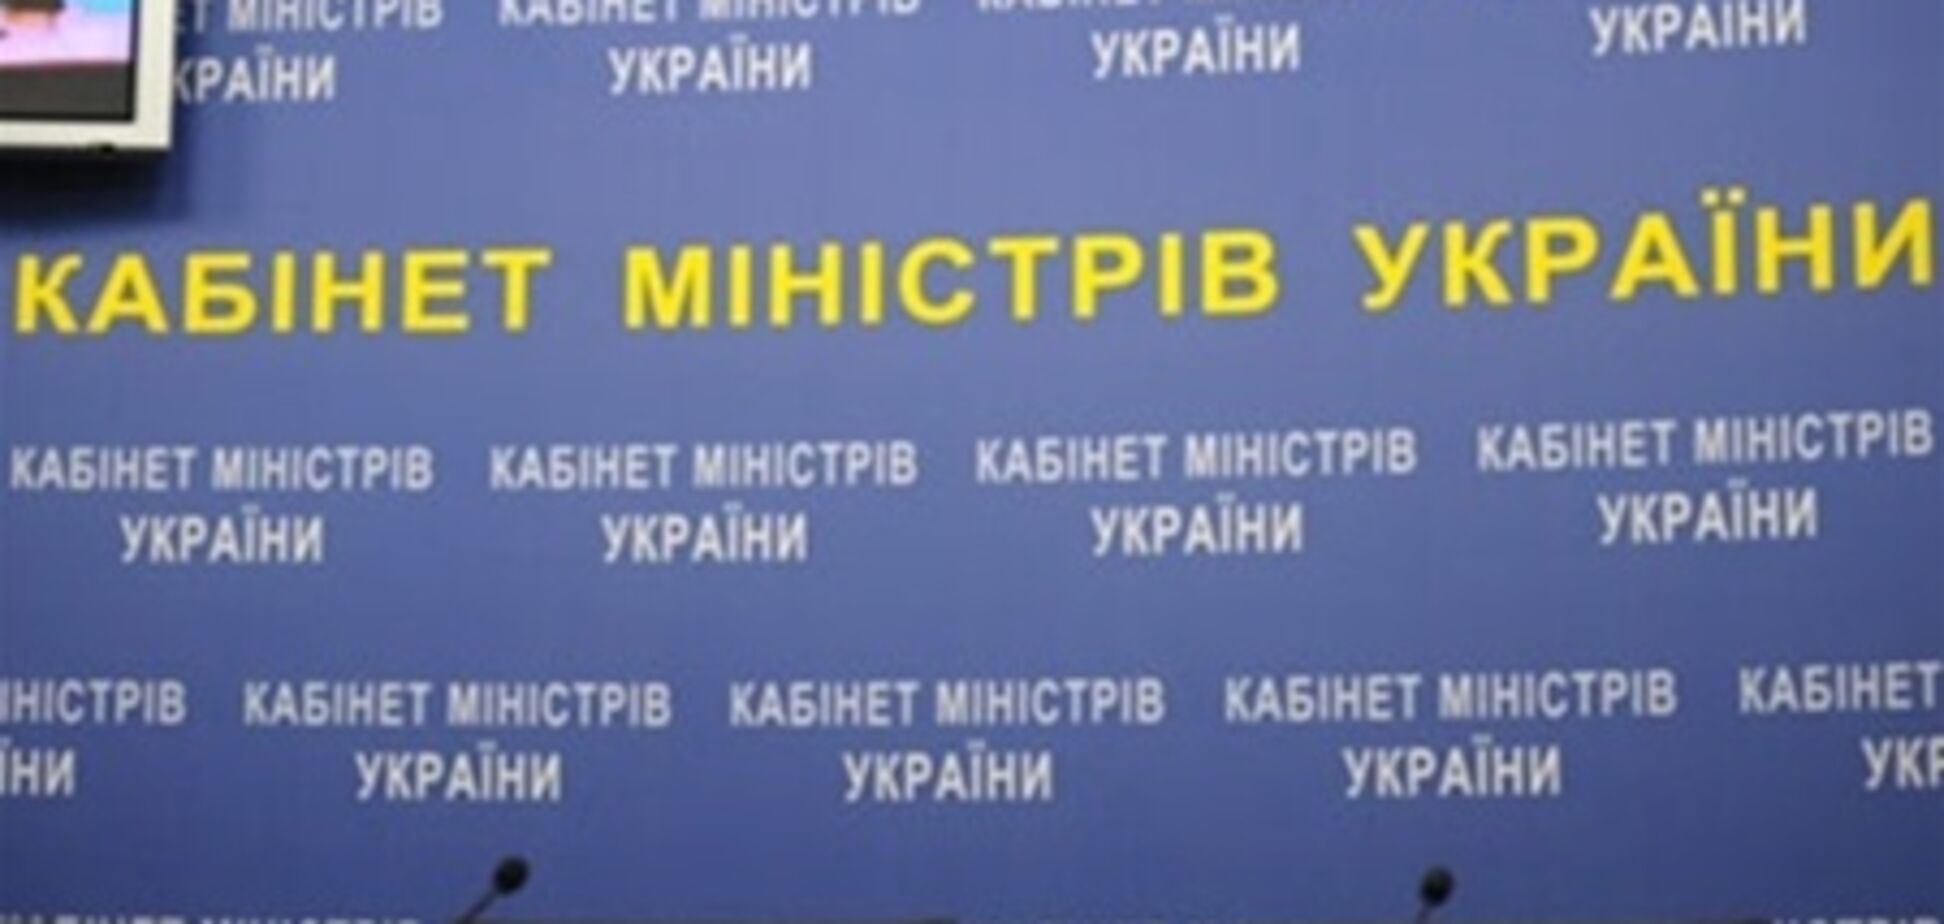 СМИ: Арбузов станет премьером, Тигипко - спикером